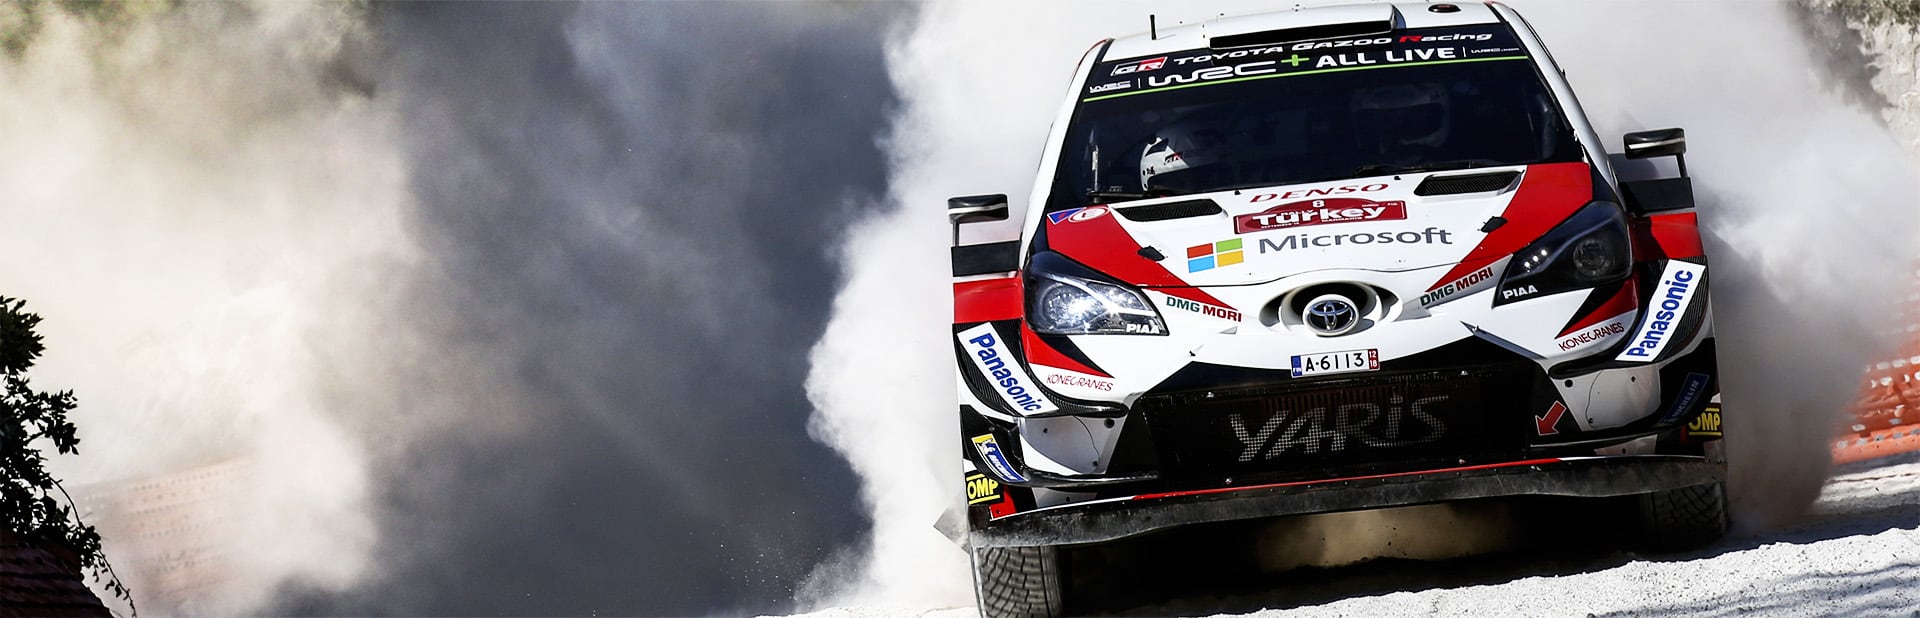 WRC 第10戦 ラリー・トルコ デイ4 ヤリスWRCのタナックが3戦連続優勝で今季4勝目を飾る ラトバラも2位に入り、チームはマニュファクチャラーズ選手権首位に浮上